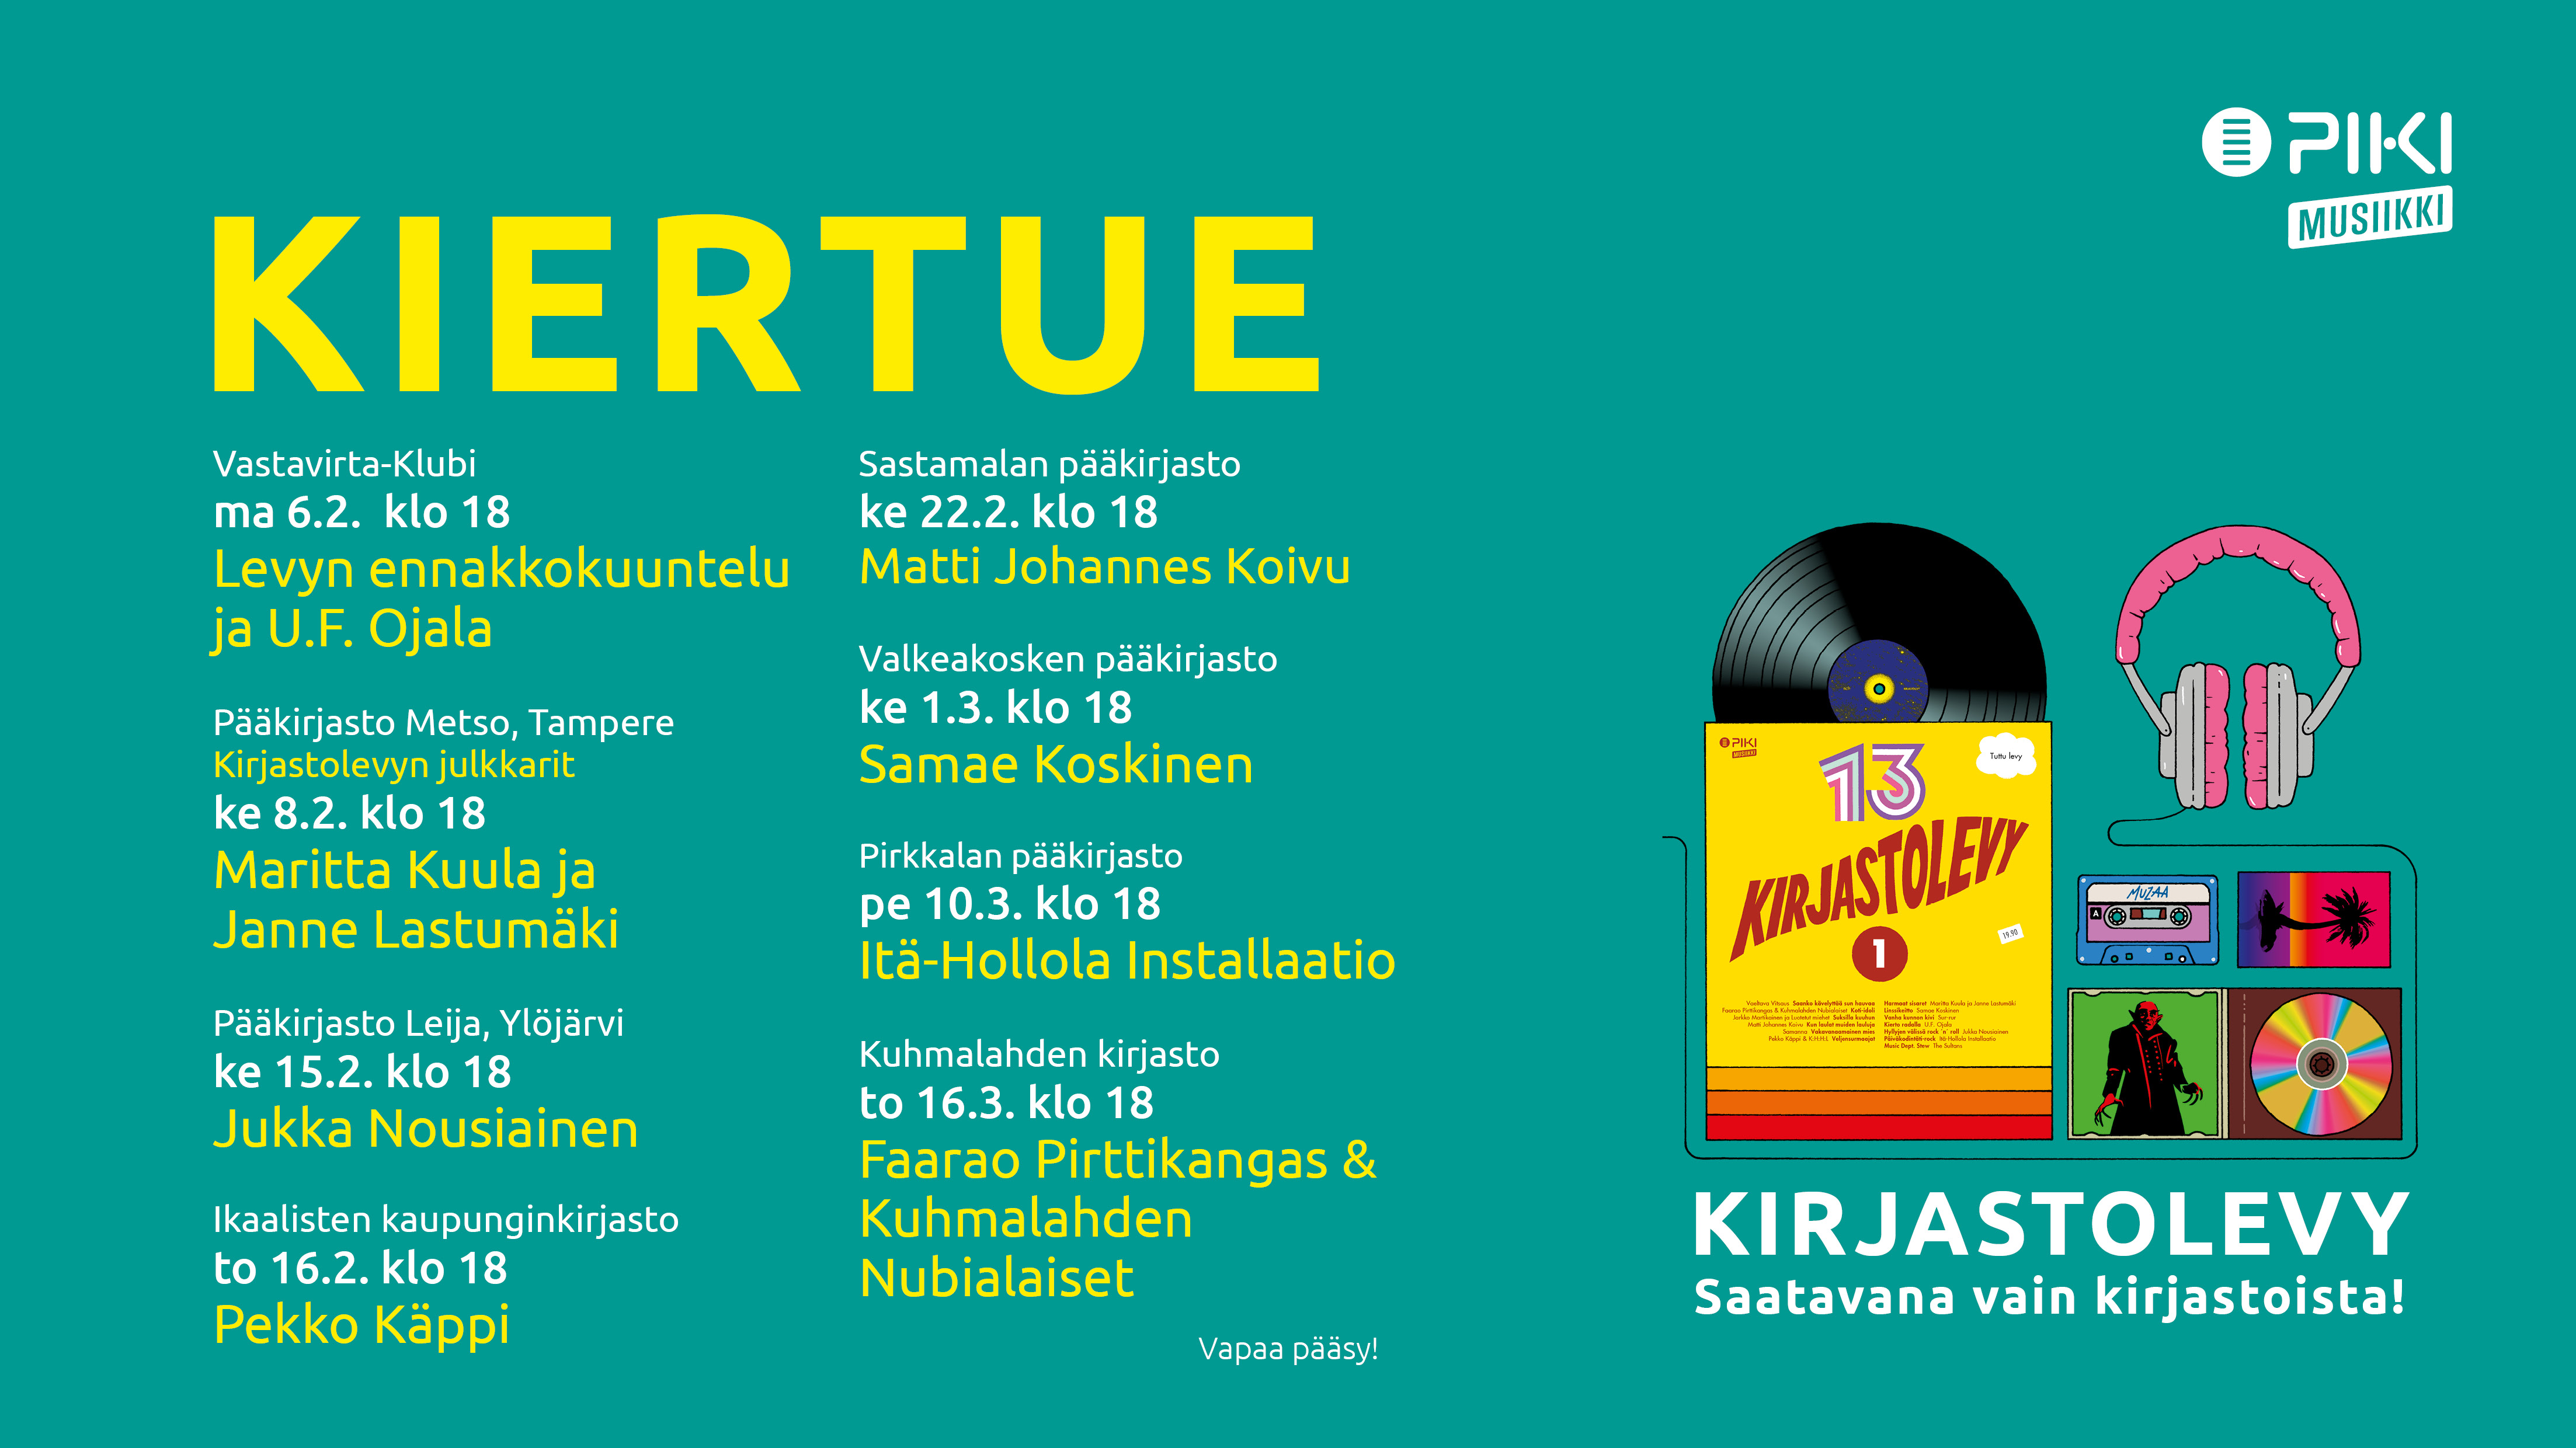 Kirjastolevykiertue valtaa Pirkanmaata helmi-maaliskuussa 2017.